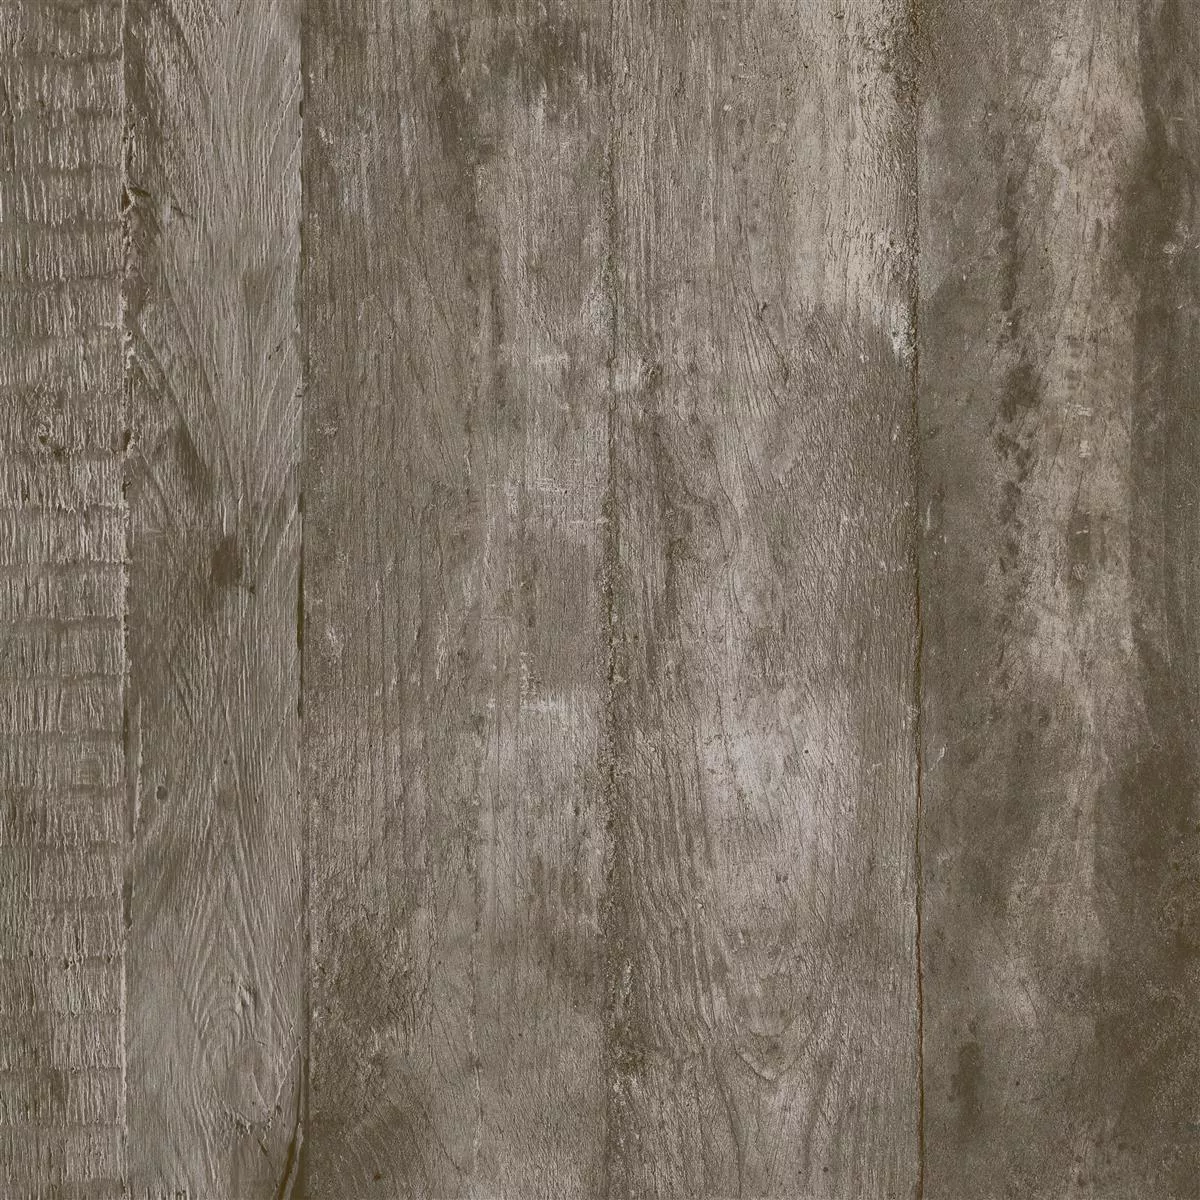 Πλακάκια Δαπέδου Gorki Όψη Ξύλου 60x60cm Γυαλισμένο Kαφέ